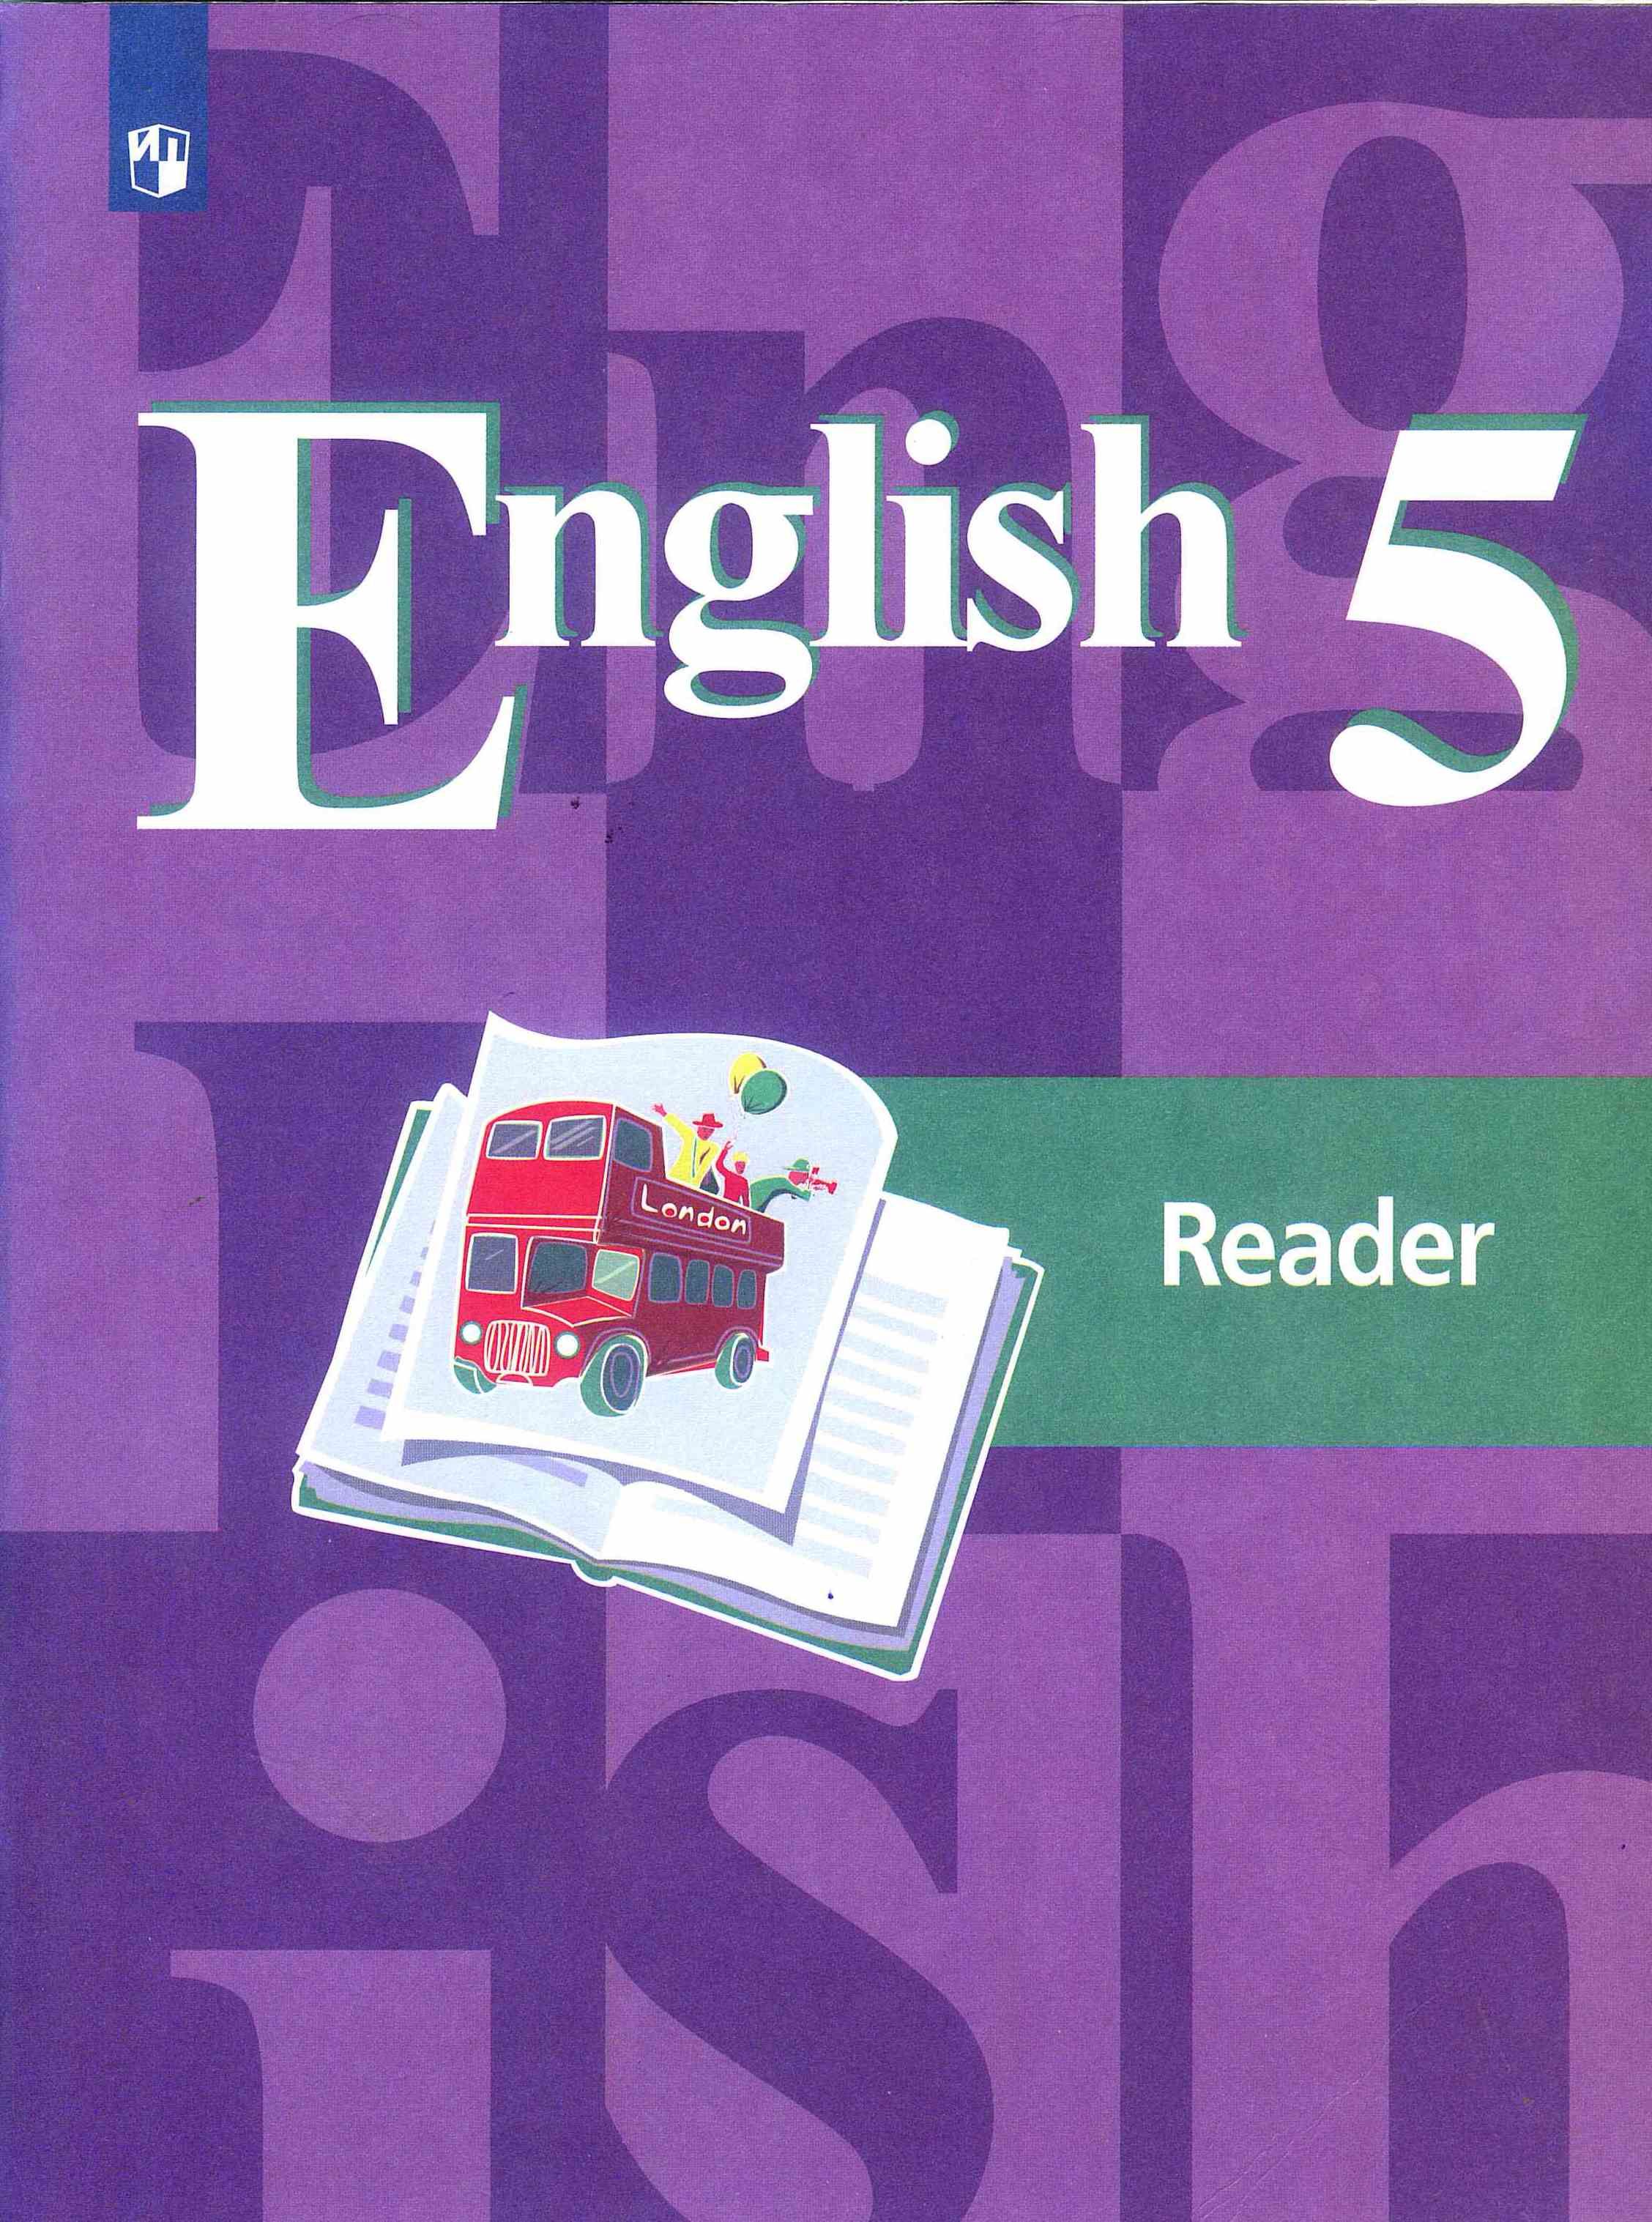 Английский 5 класс упр 2 б. English 5 Reader кузовлев лапа. УМК кузовлев для 5 класса английский. Кузовлев англ. Язык 5 чтение книга. Книга для чтения английский язык 5 класс.